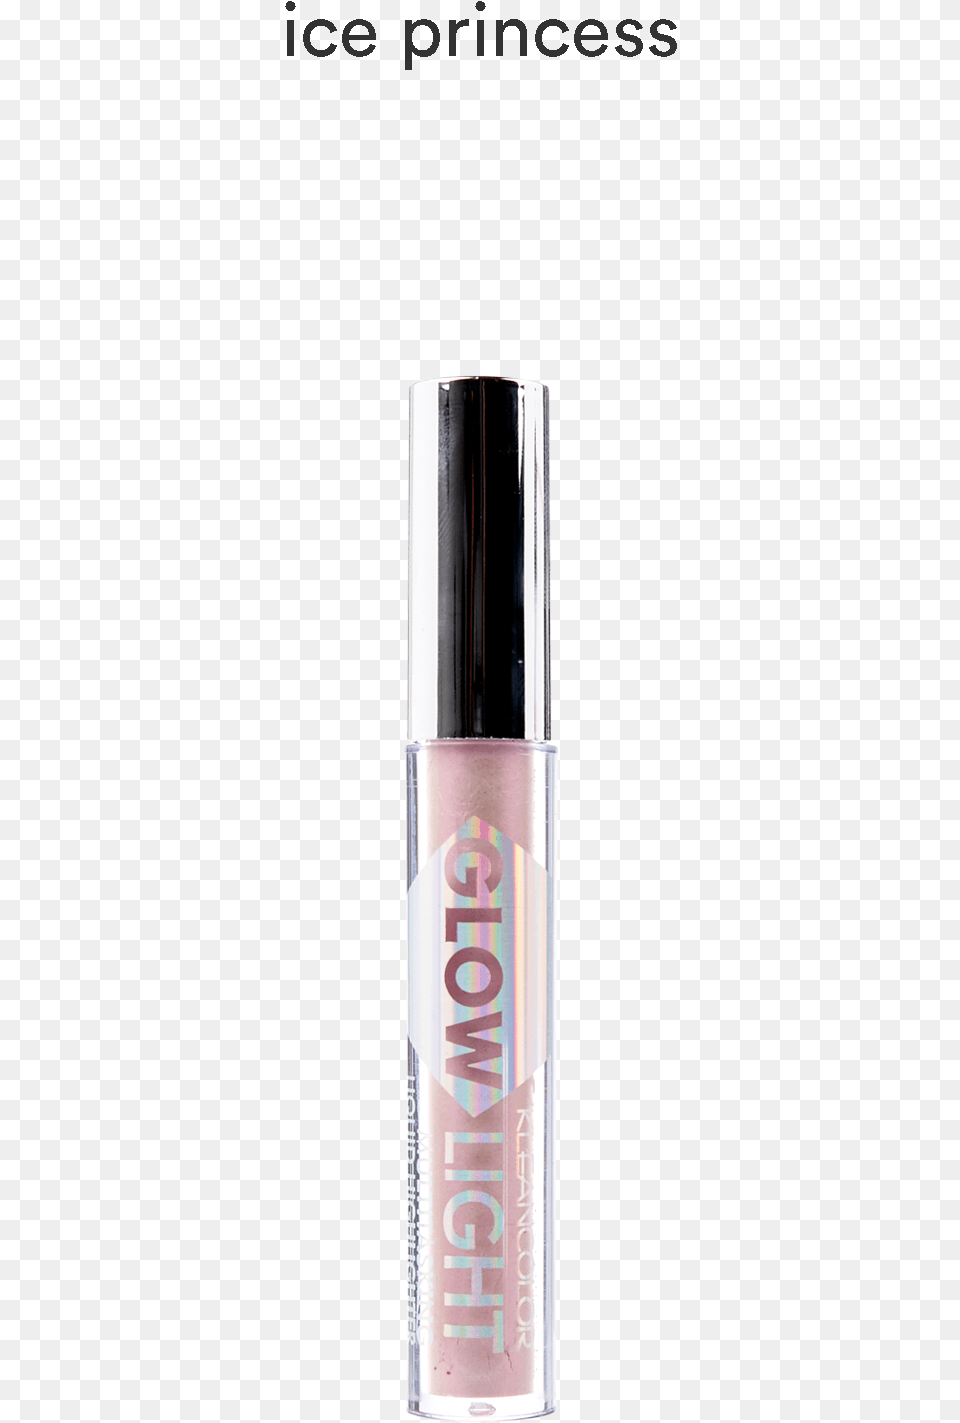 Lip Gloss, Cosmetics, Lipstick Png Image